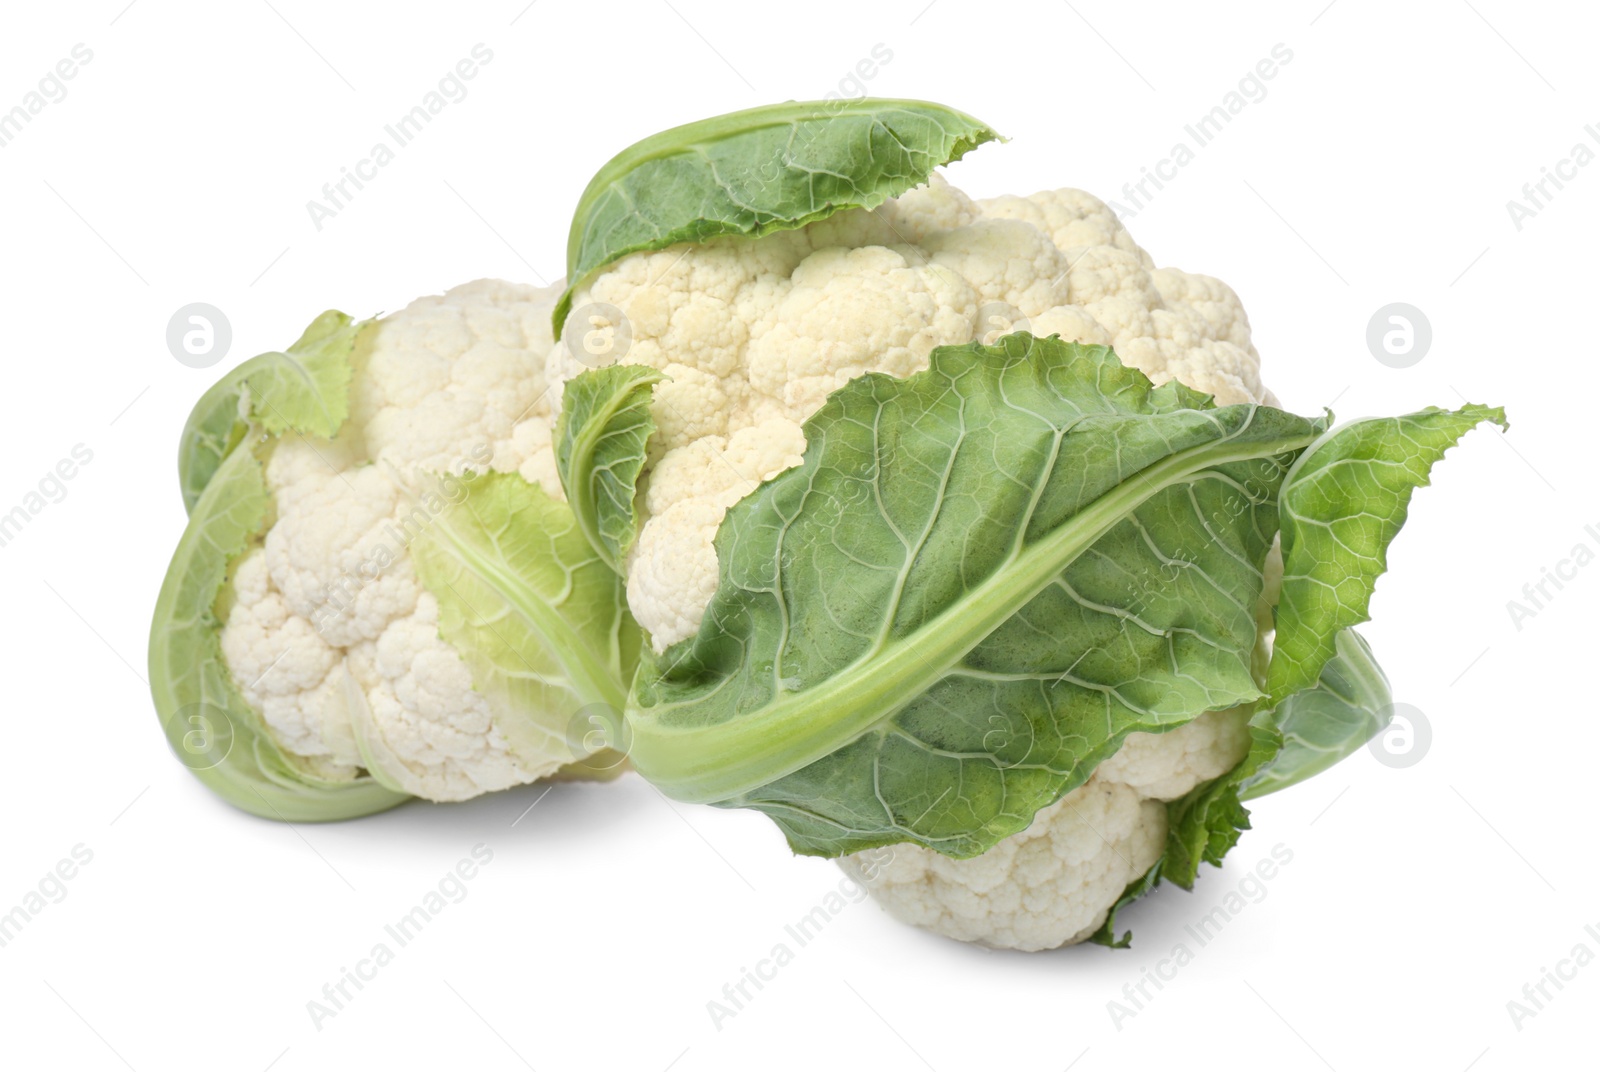 Photo of Whole fresh raw cauliflowers on white background